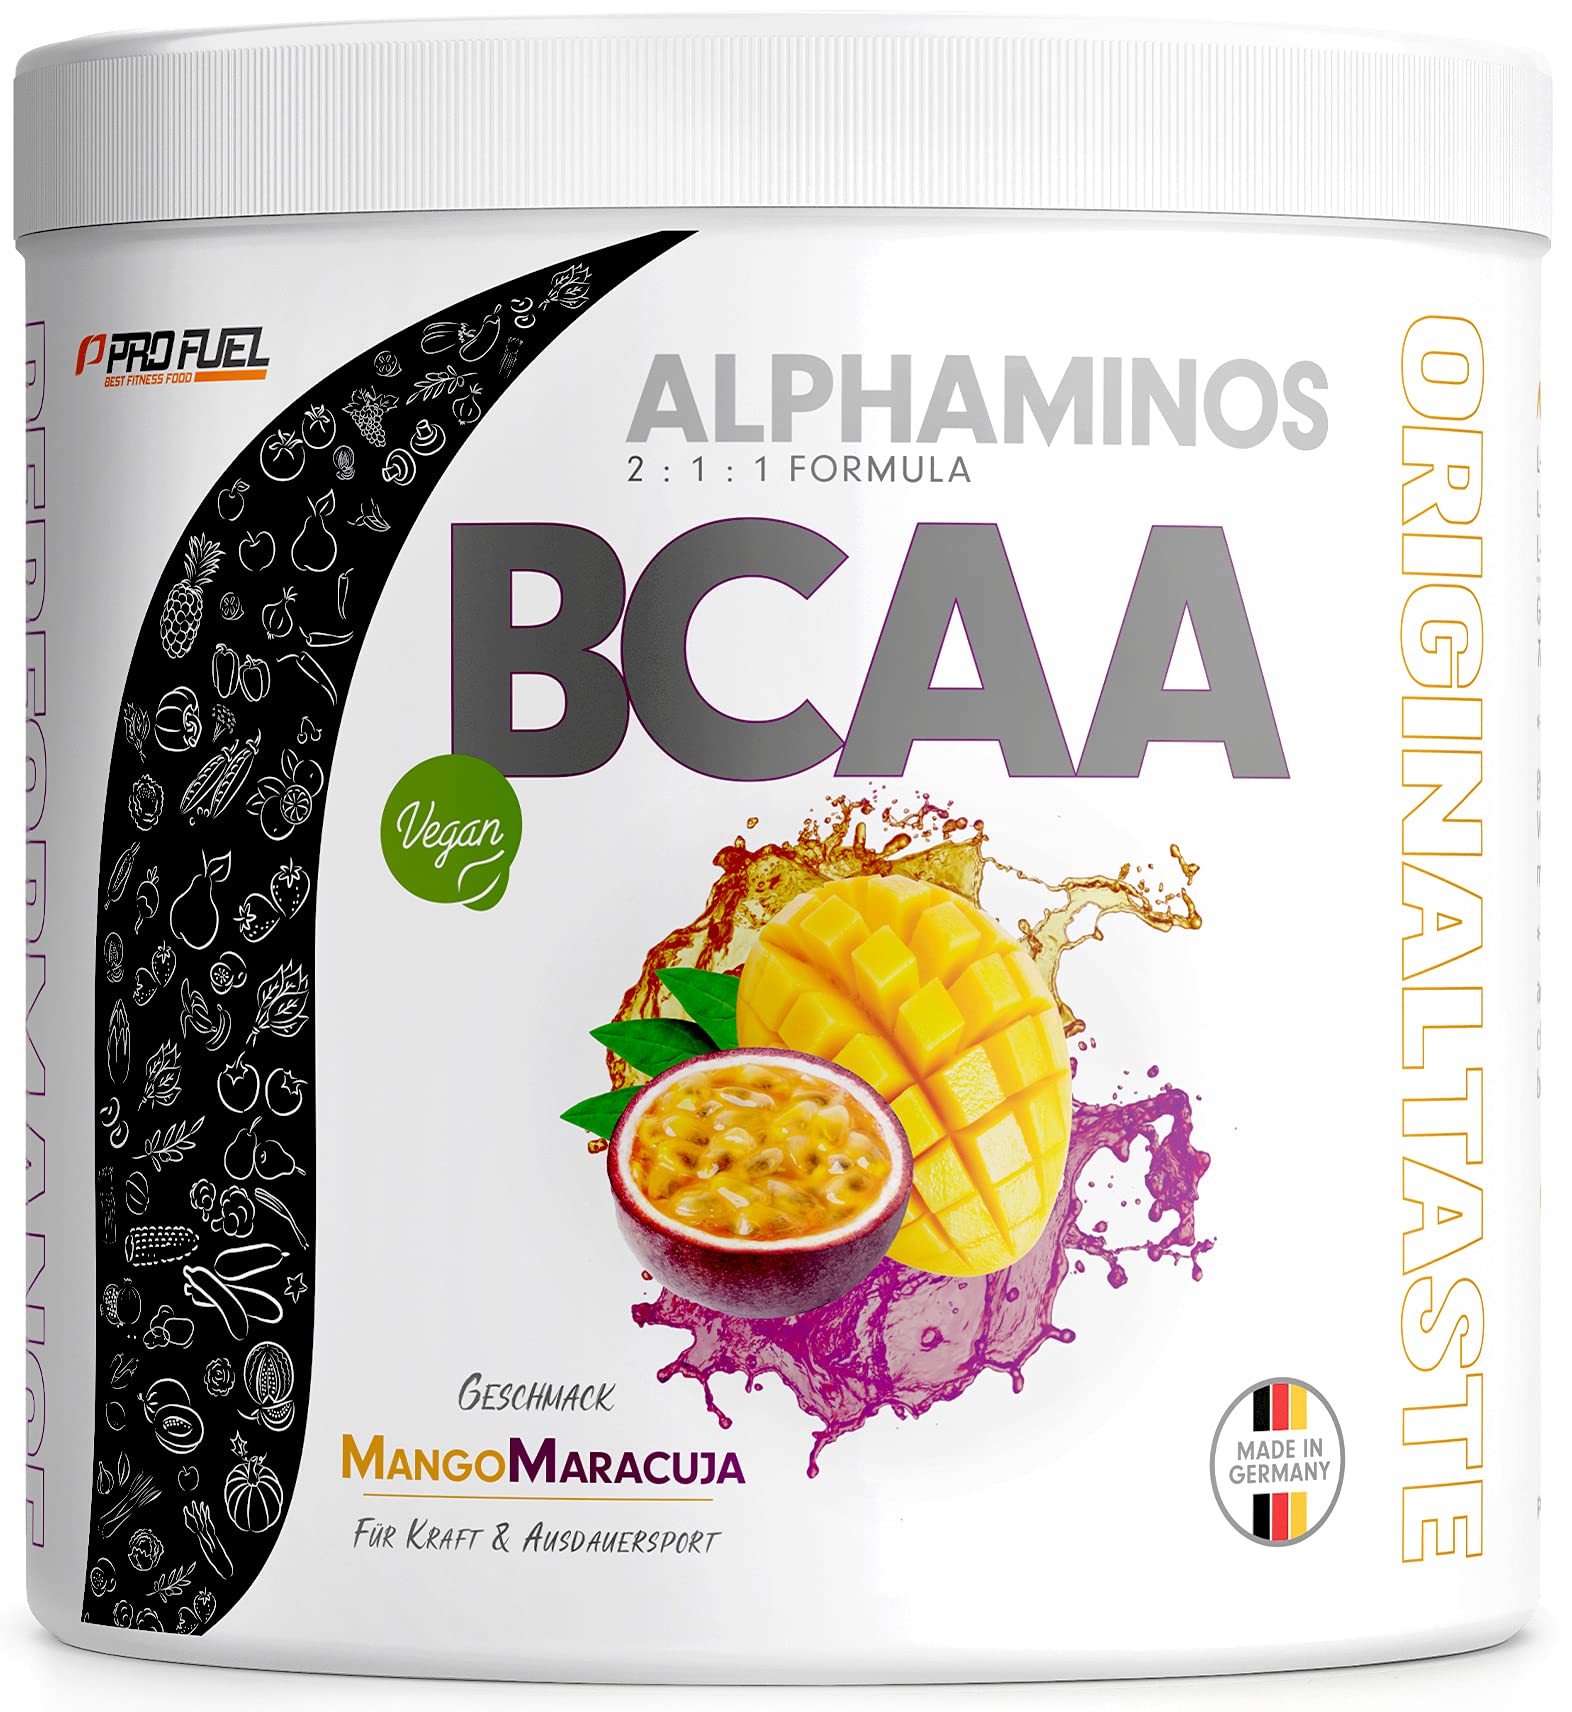 BCAA Pulver 300g Mango-Maracuja, TESTSIEGER Alphaminos BCAA 2:1:1 Drink, unfassbar leckerer Geschmack, Essentielle Aminosäuren Leucin, Isoleucin & Valin, 100% vegan - Top Löslichkeit - Laborgeprüft